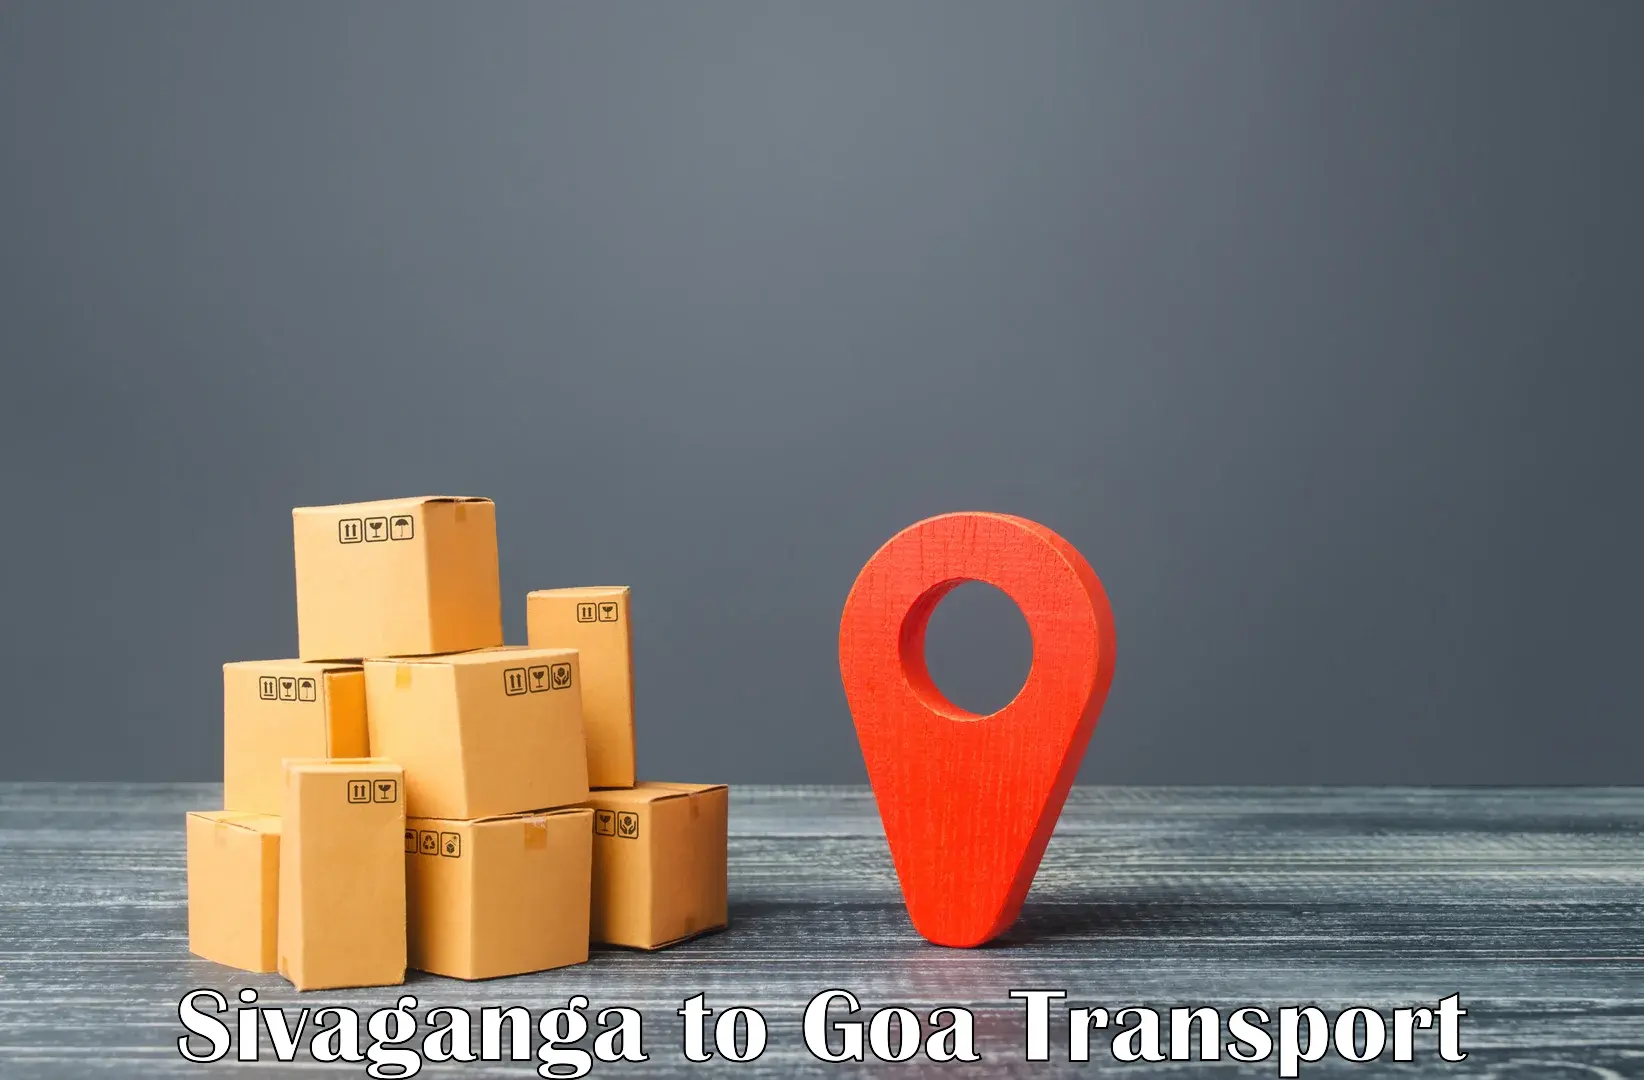 Two wheeler transport services Sivaganga to IIT Goa